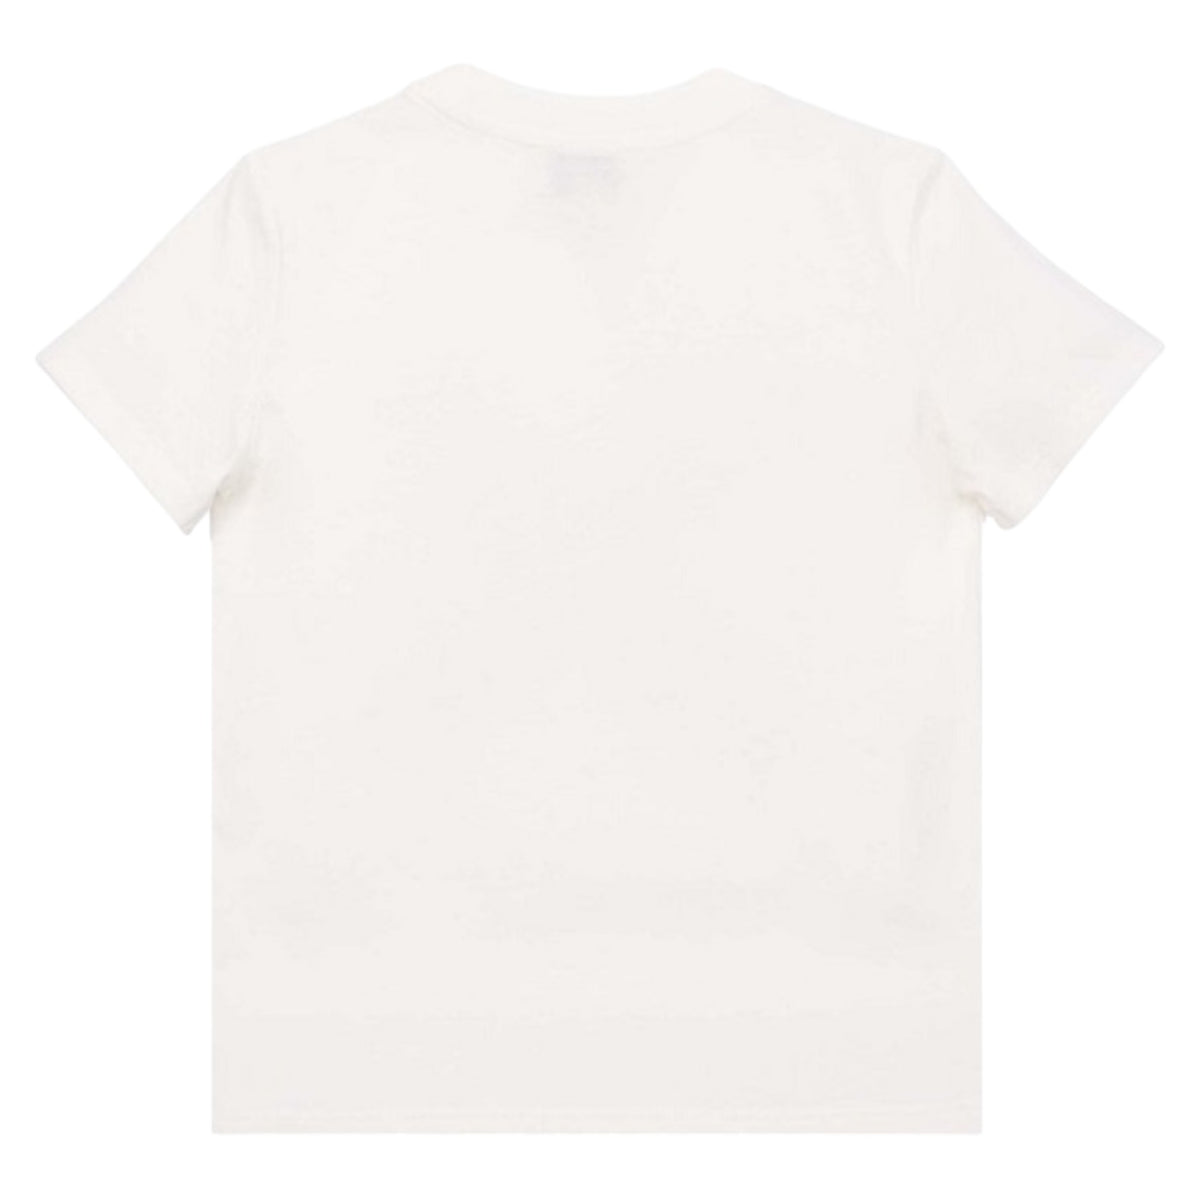 Kenzo Kids Cross Logo T-Shirt